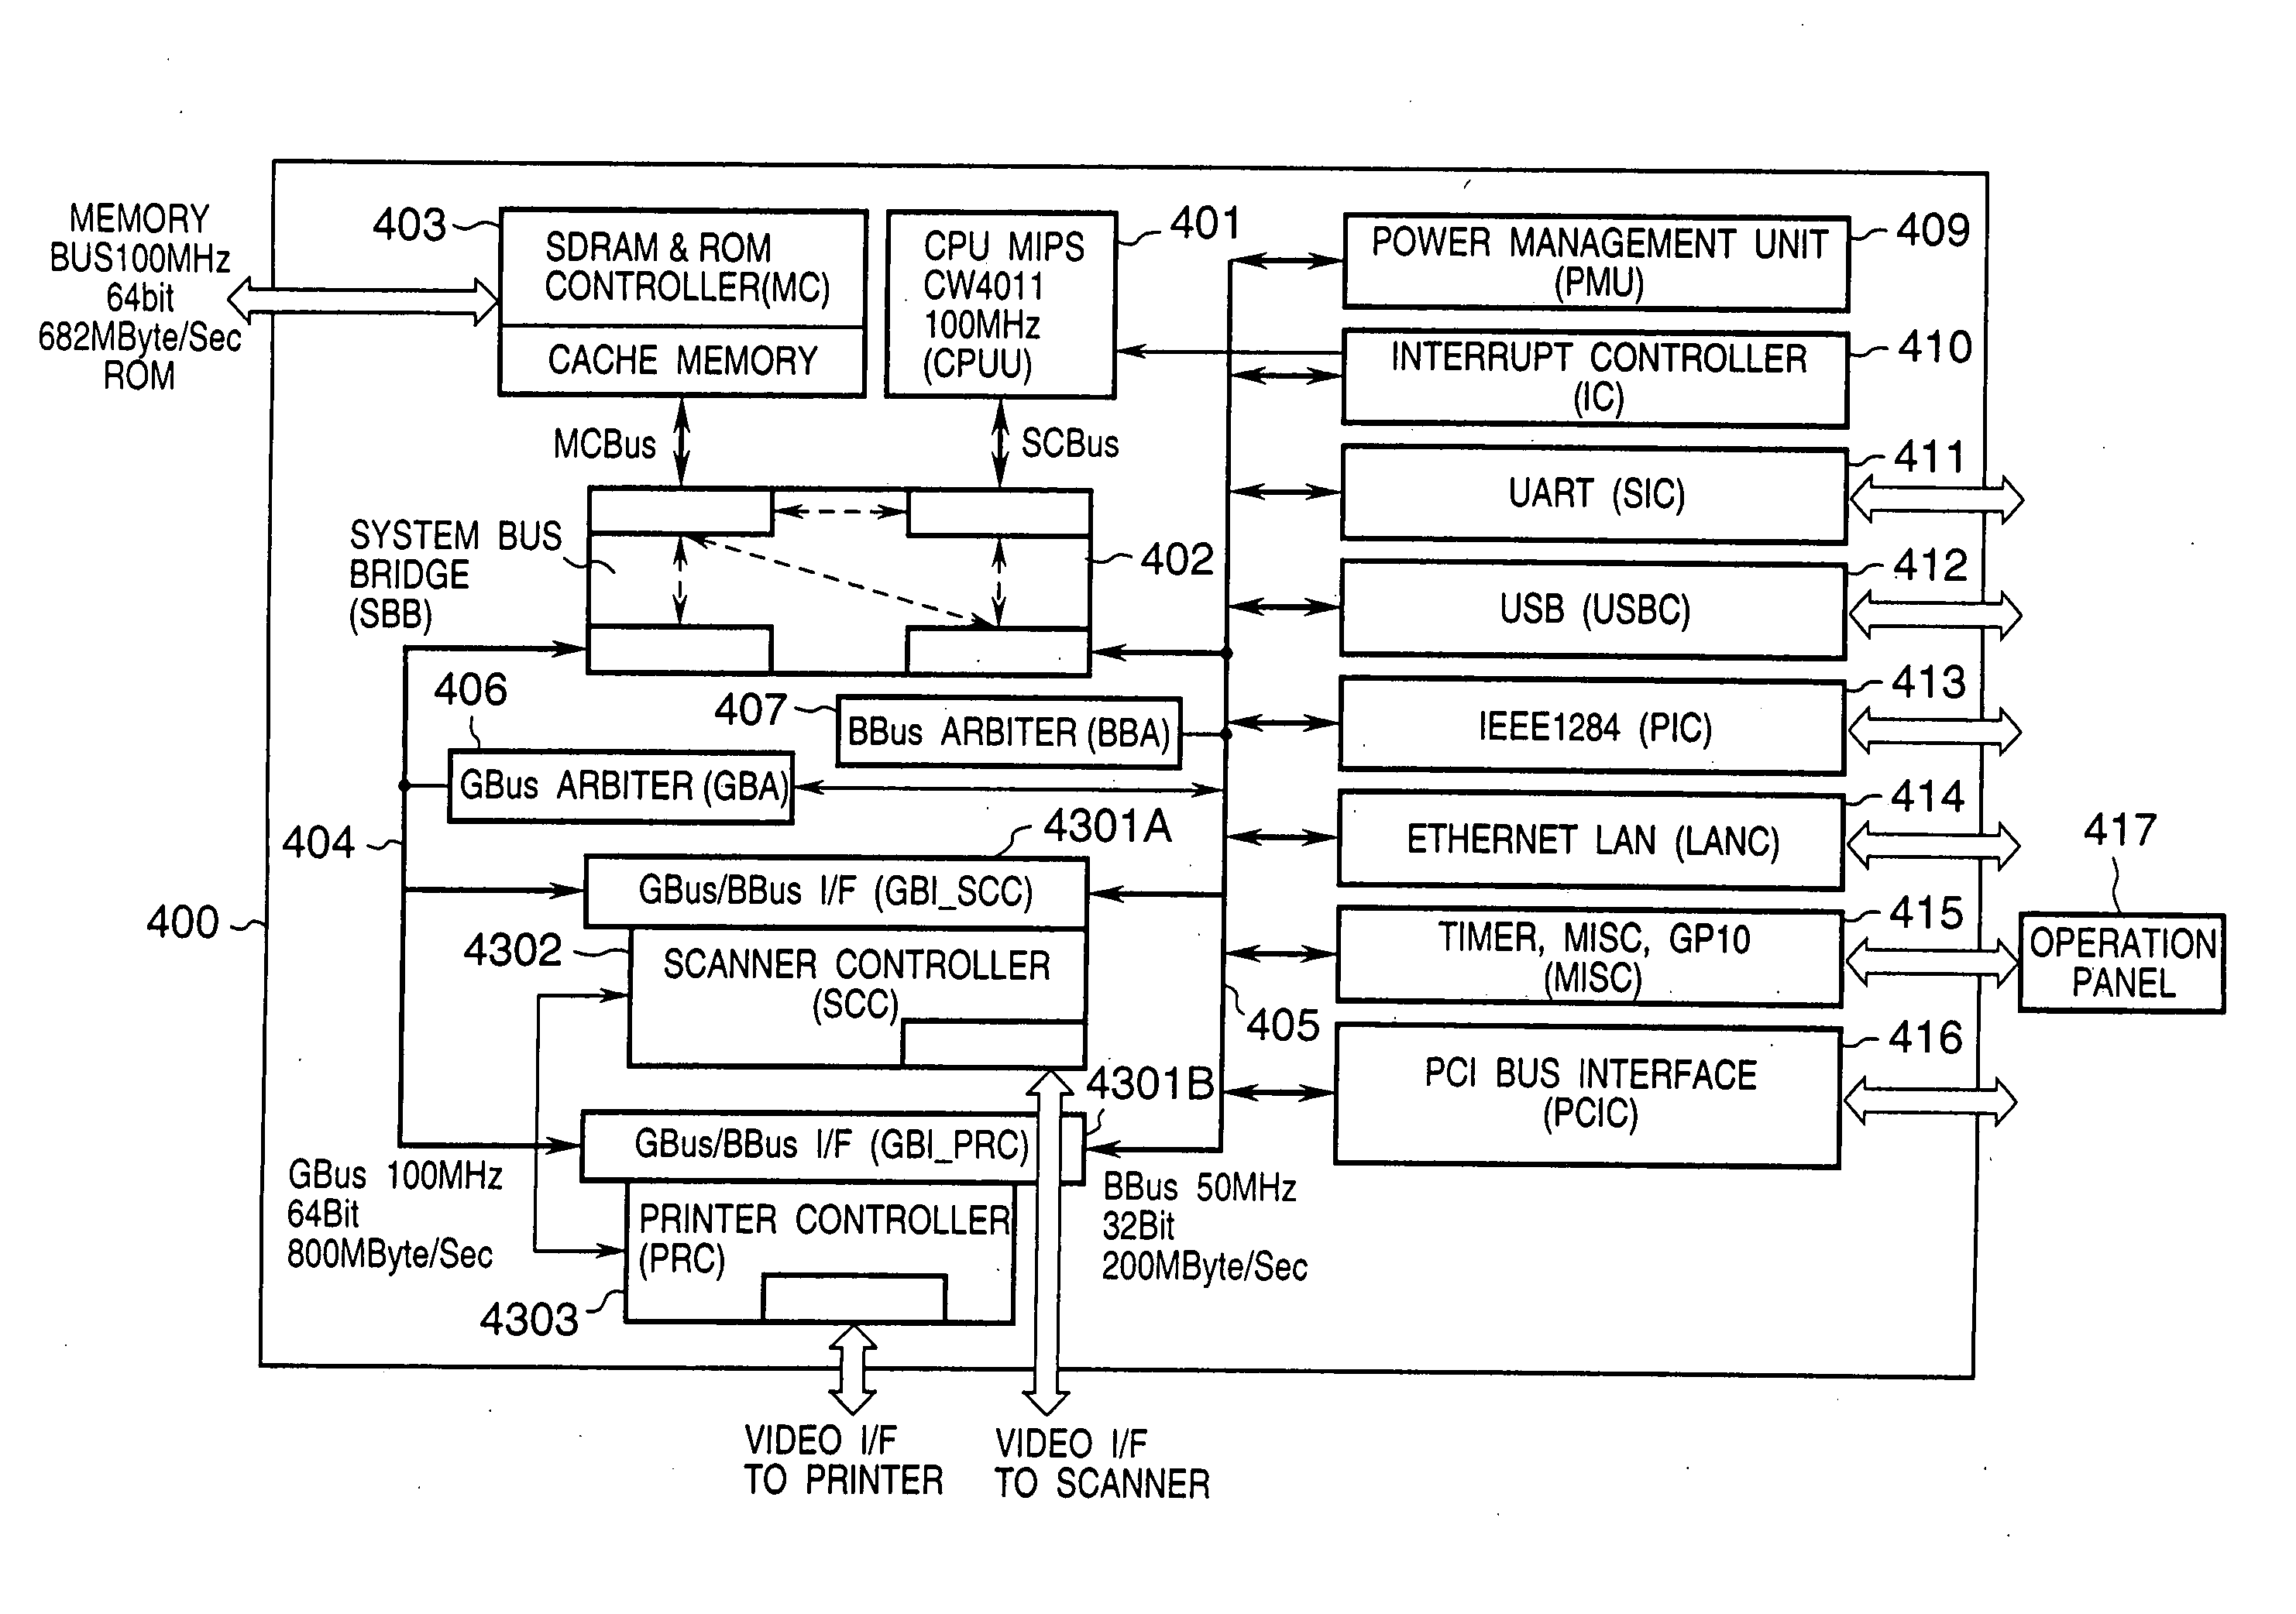 Input/output control apparatus